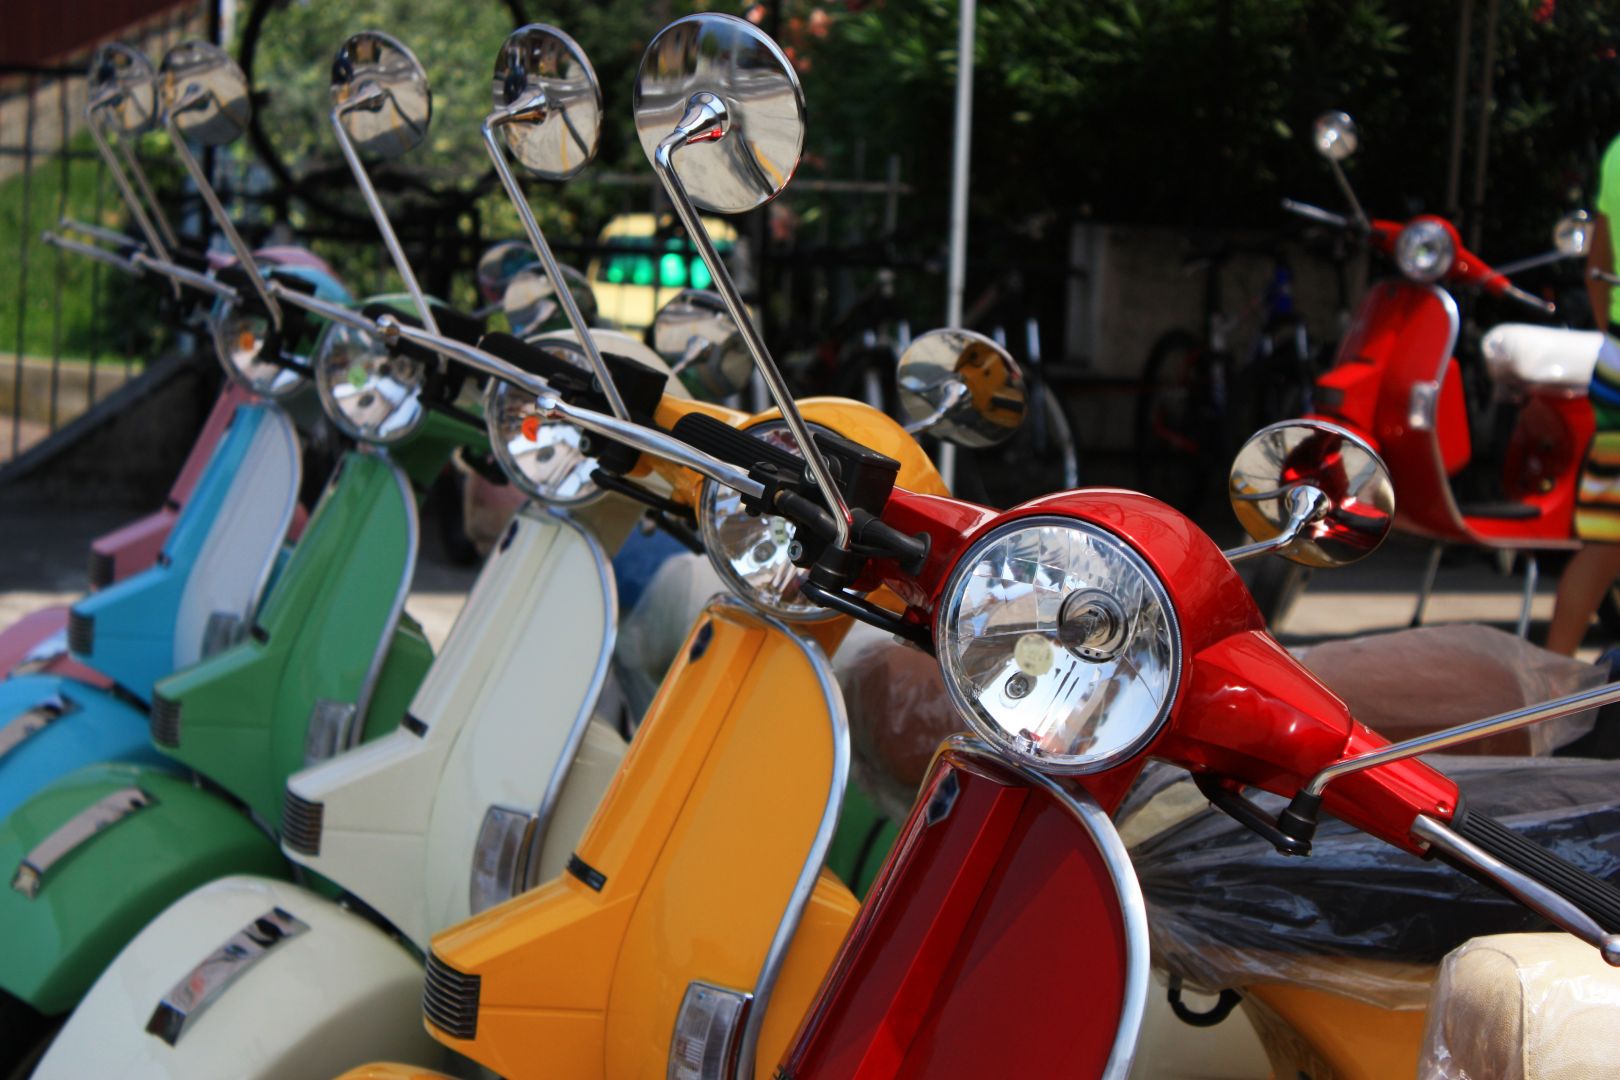 Poptávka na renovace motocyklu Jawa včetně generální opravy motoru (Servis) - Praha